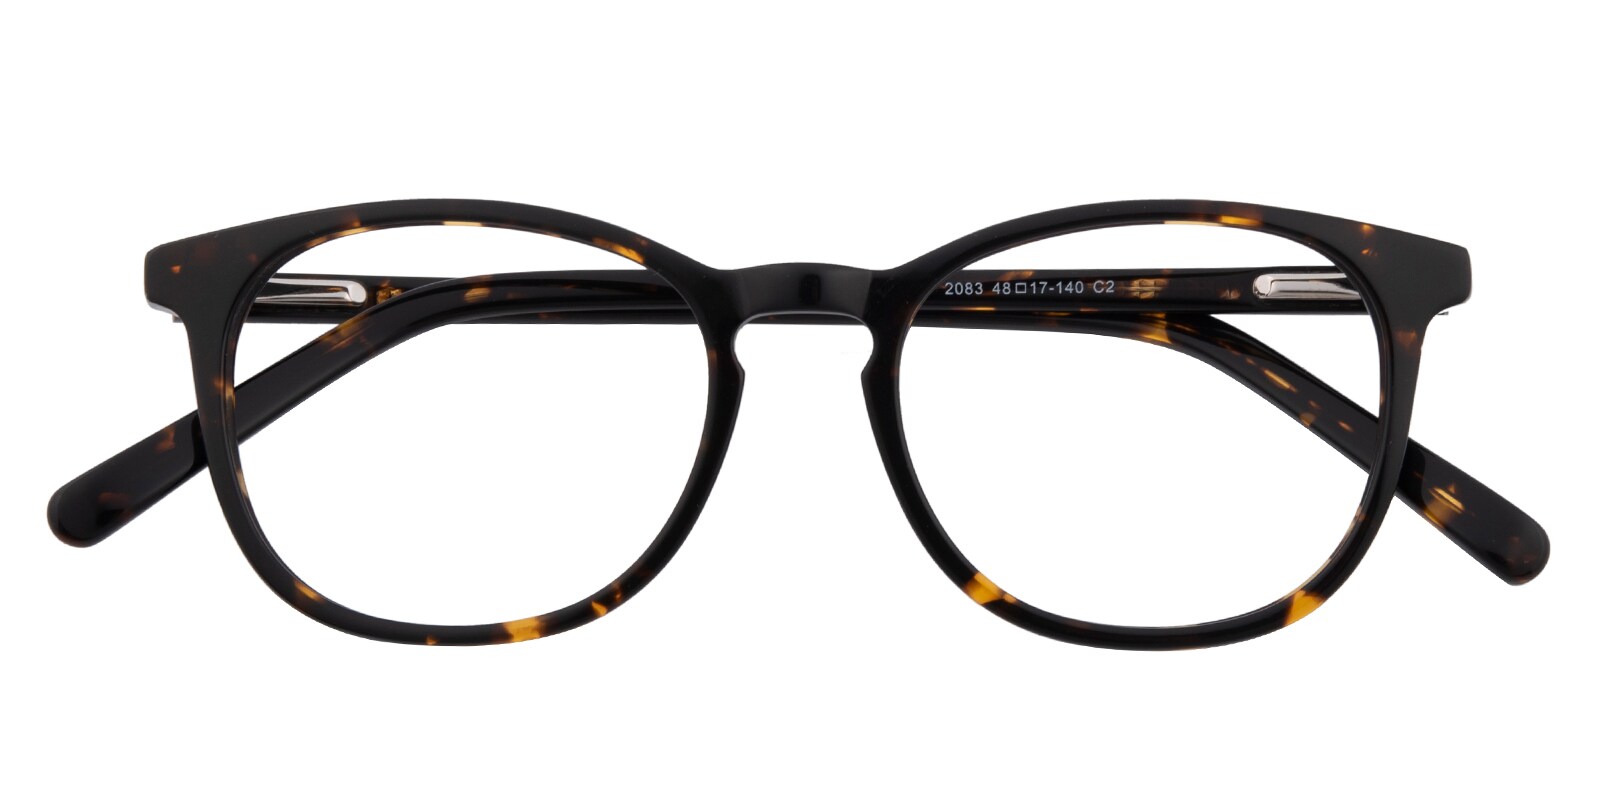 Round Eyeglasses, Full Frame Tortoise Plastic - FZ2020